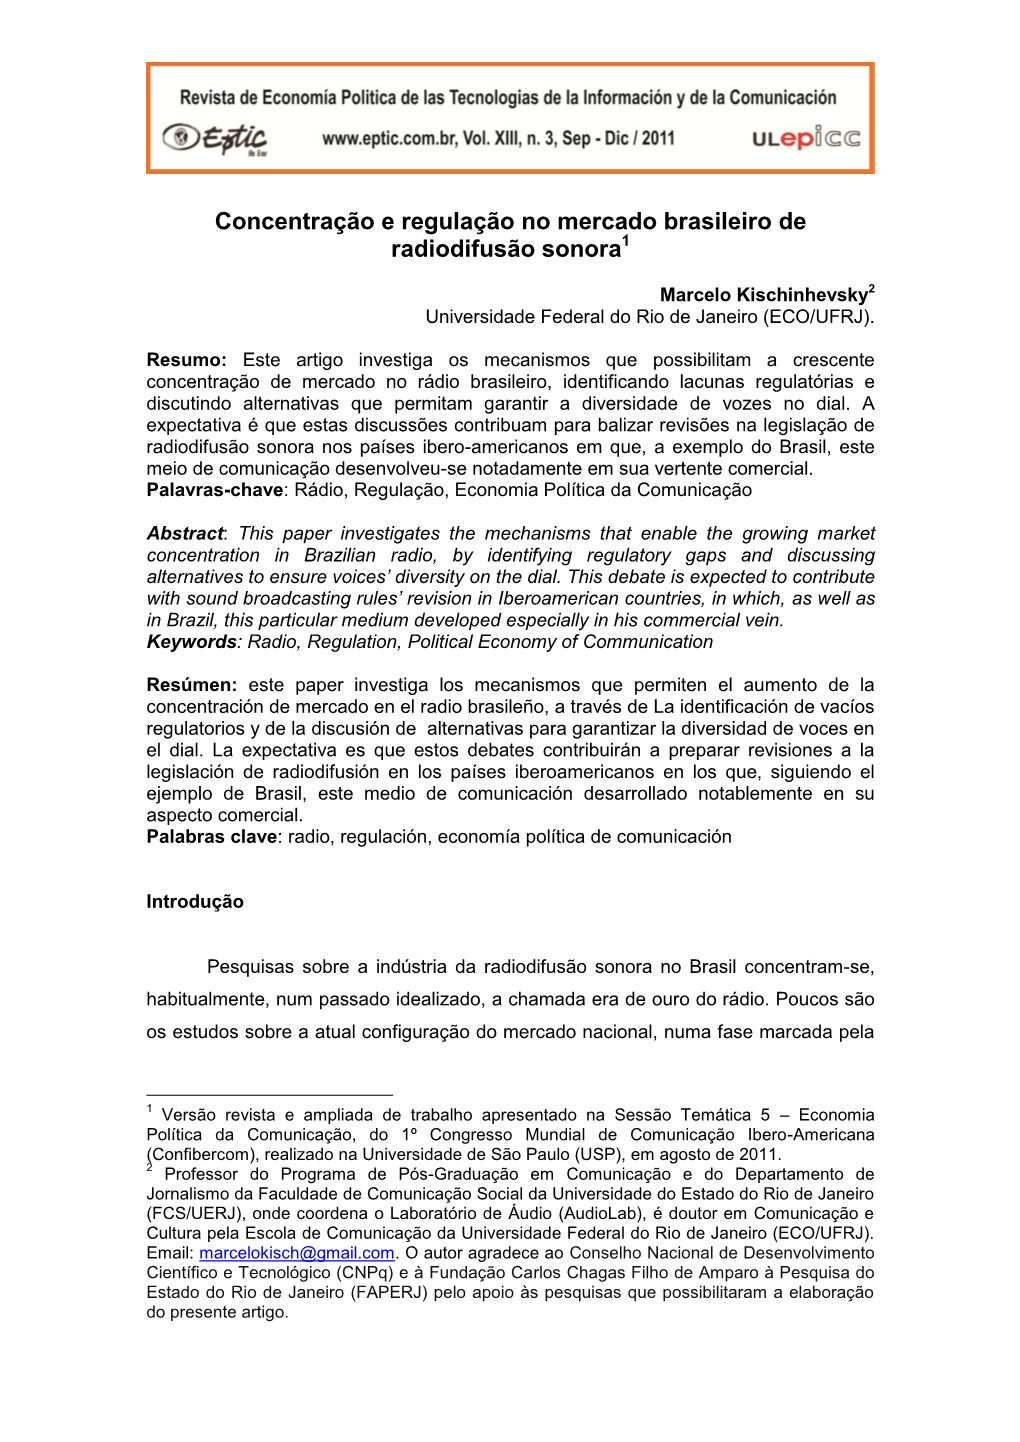 Concentração E Regulação No Mercado Brasileiro De Radiodifusão Sonora